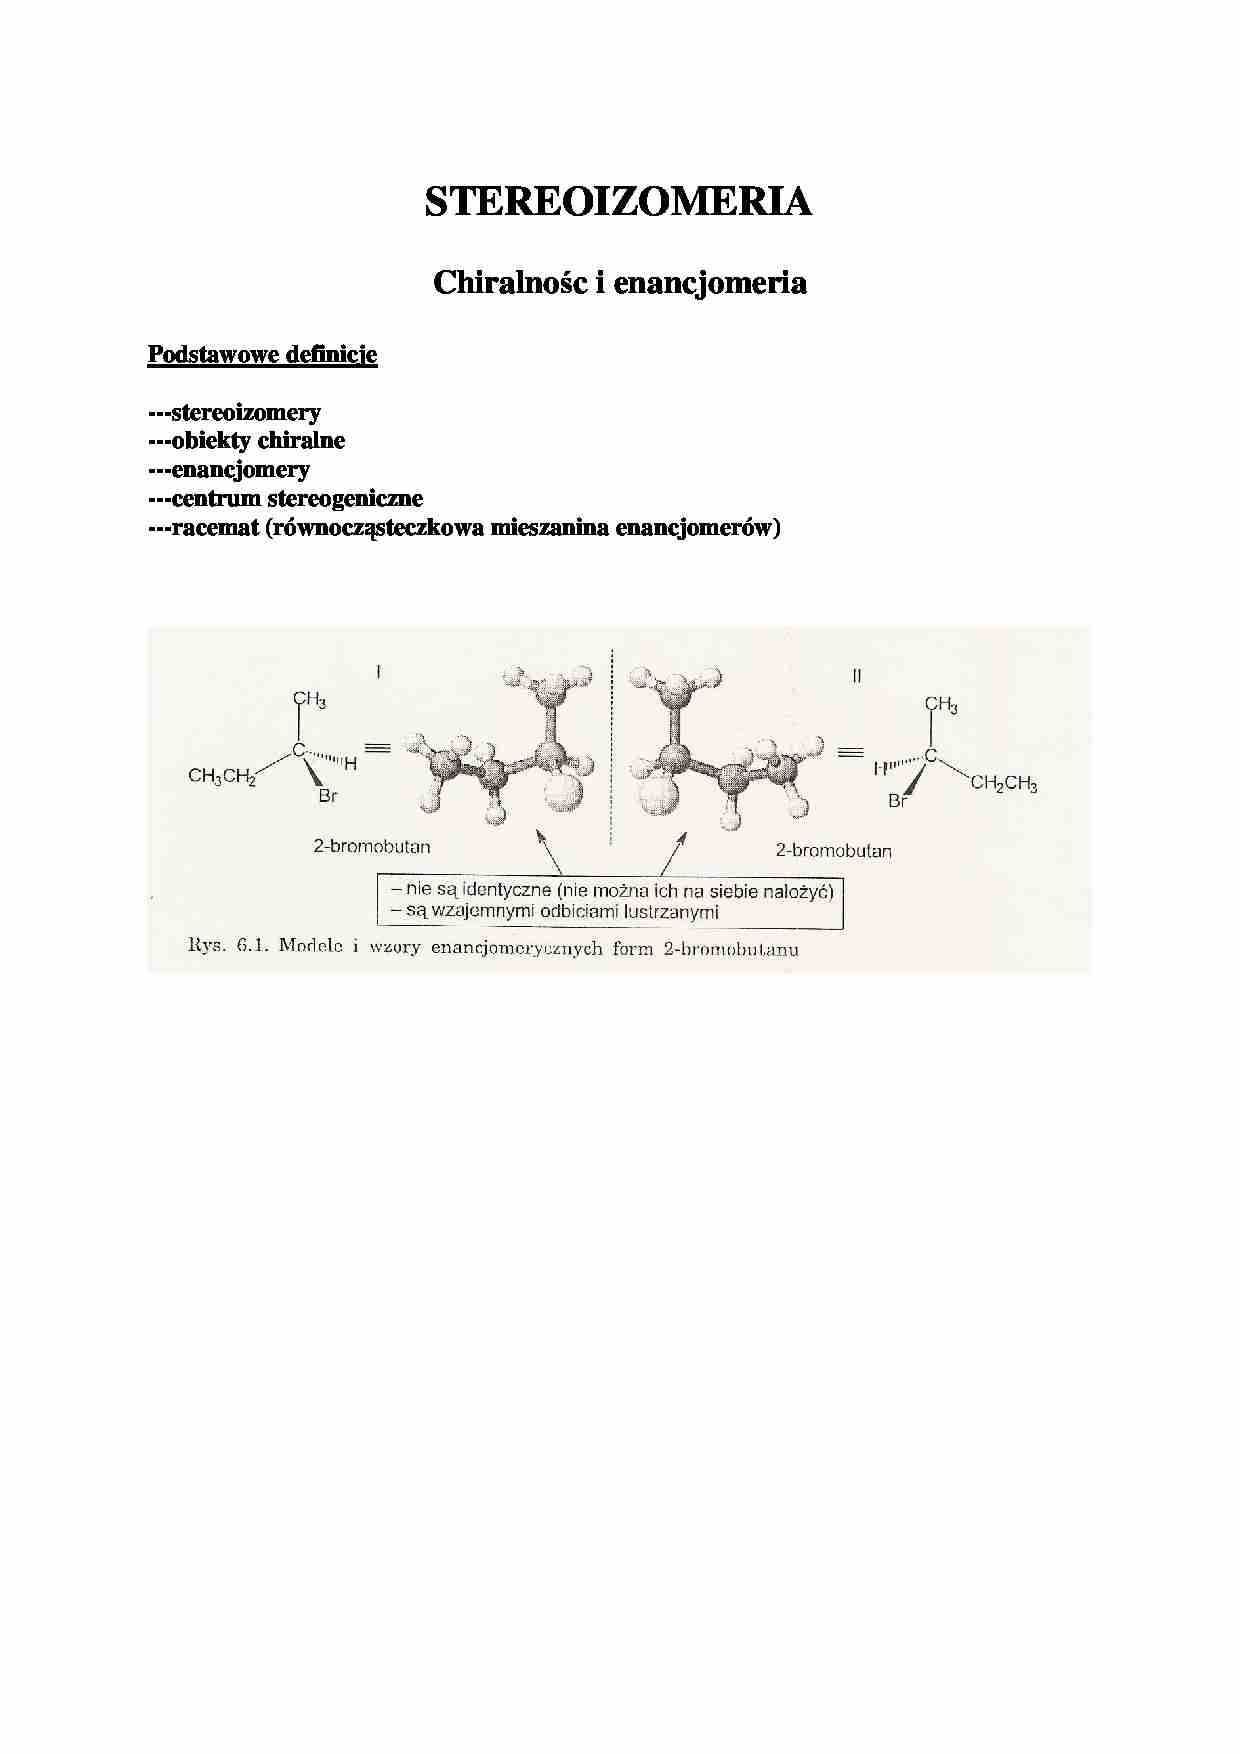 Chiralność i enacjomeria - chemia organiczna - strona 1